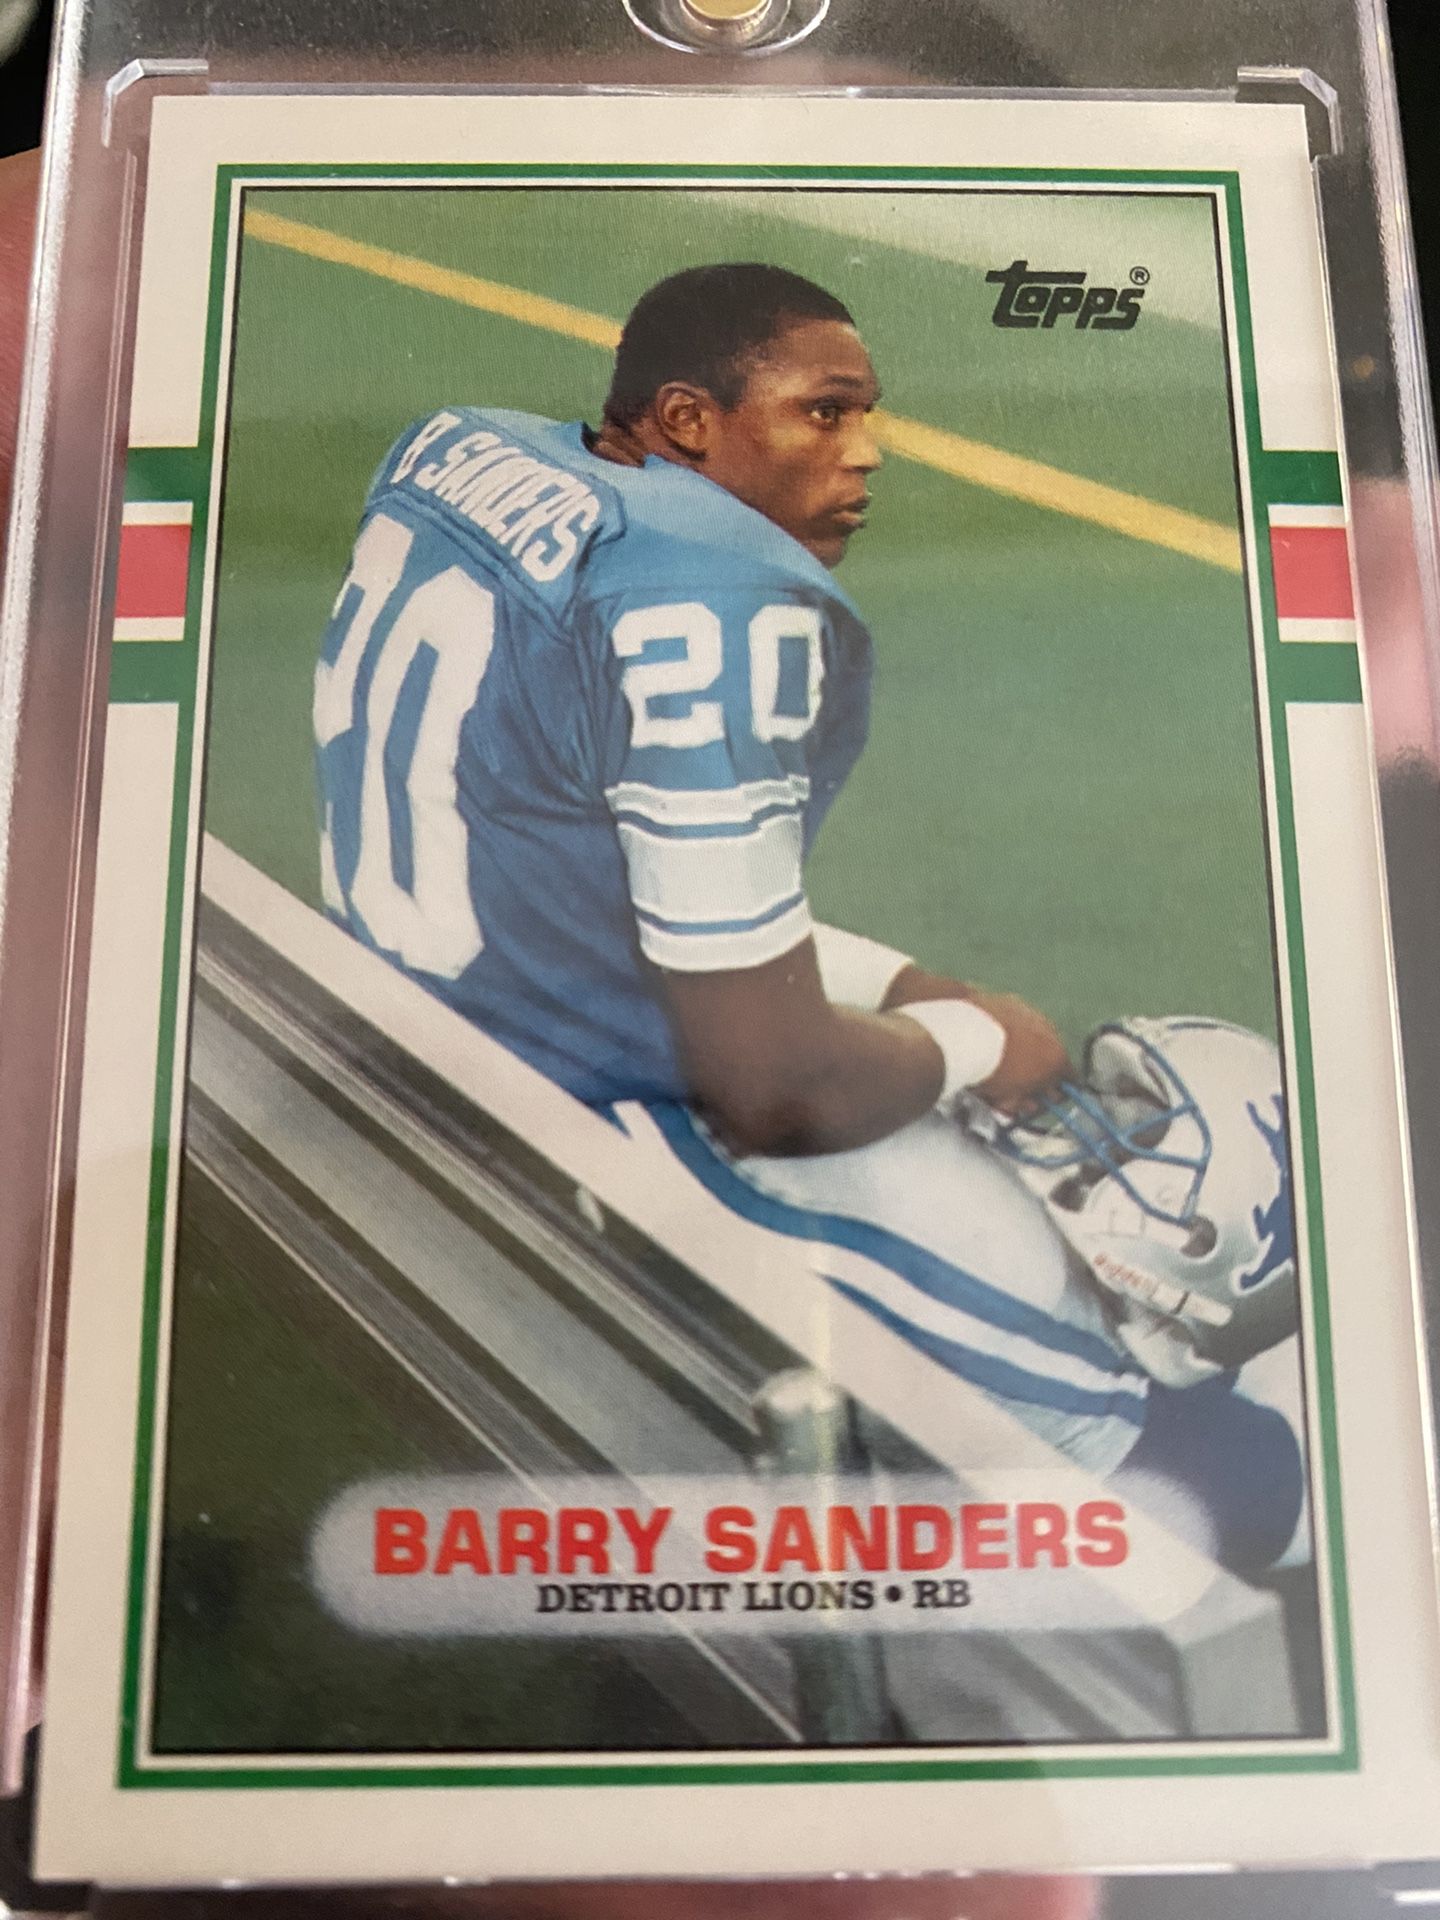 Barry Sanders Rookie Card